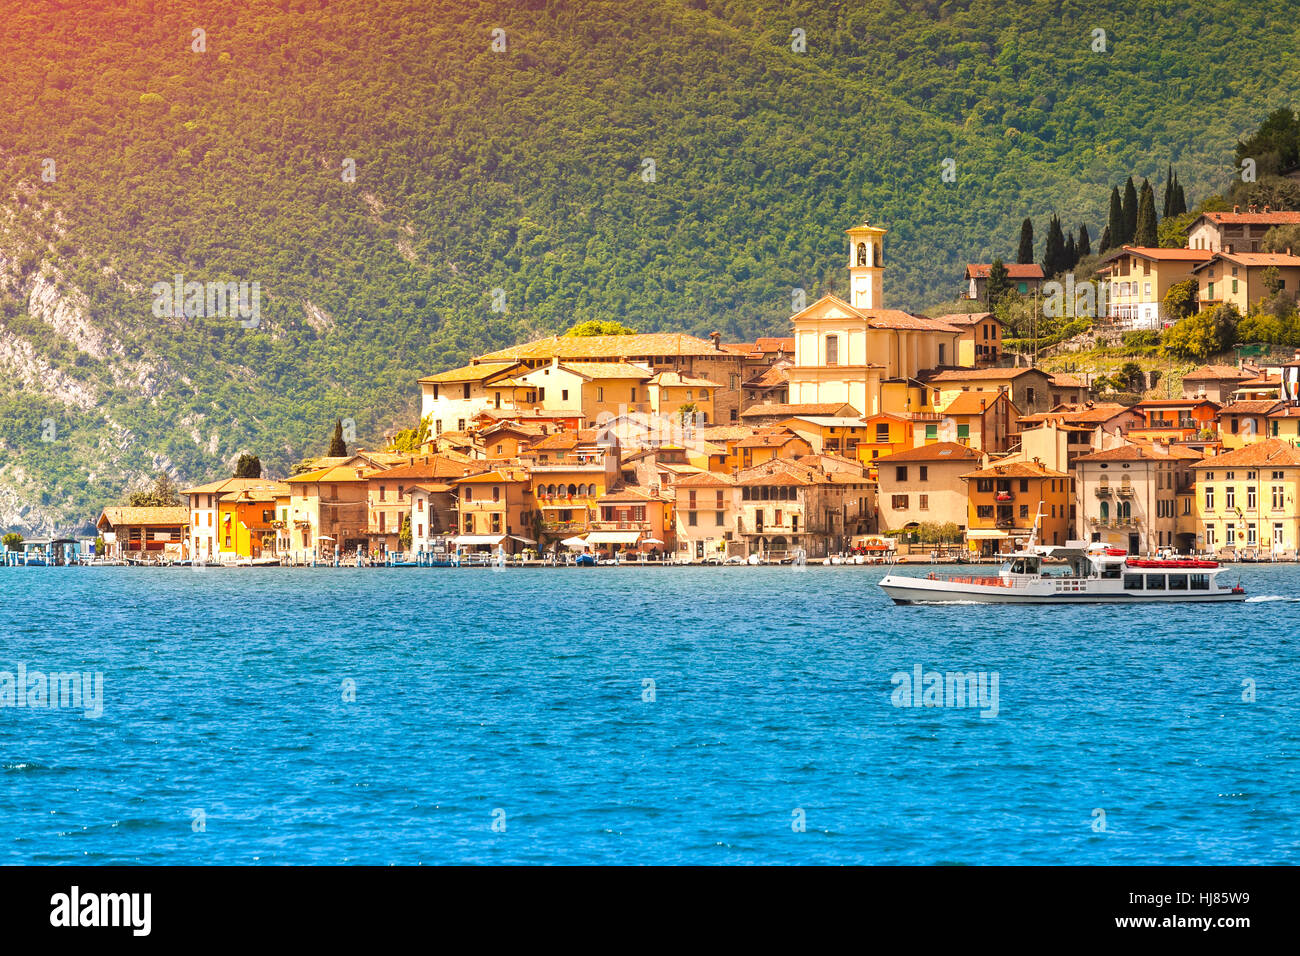 Vista de la ciudad de Peschiera Maraglio, un brillante día soleado. Región Lombardía, provincia de Brescia (BS) en lago de Iseo. Italia, Europa. Foto de stock